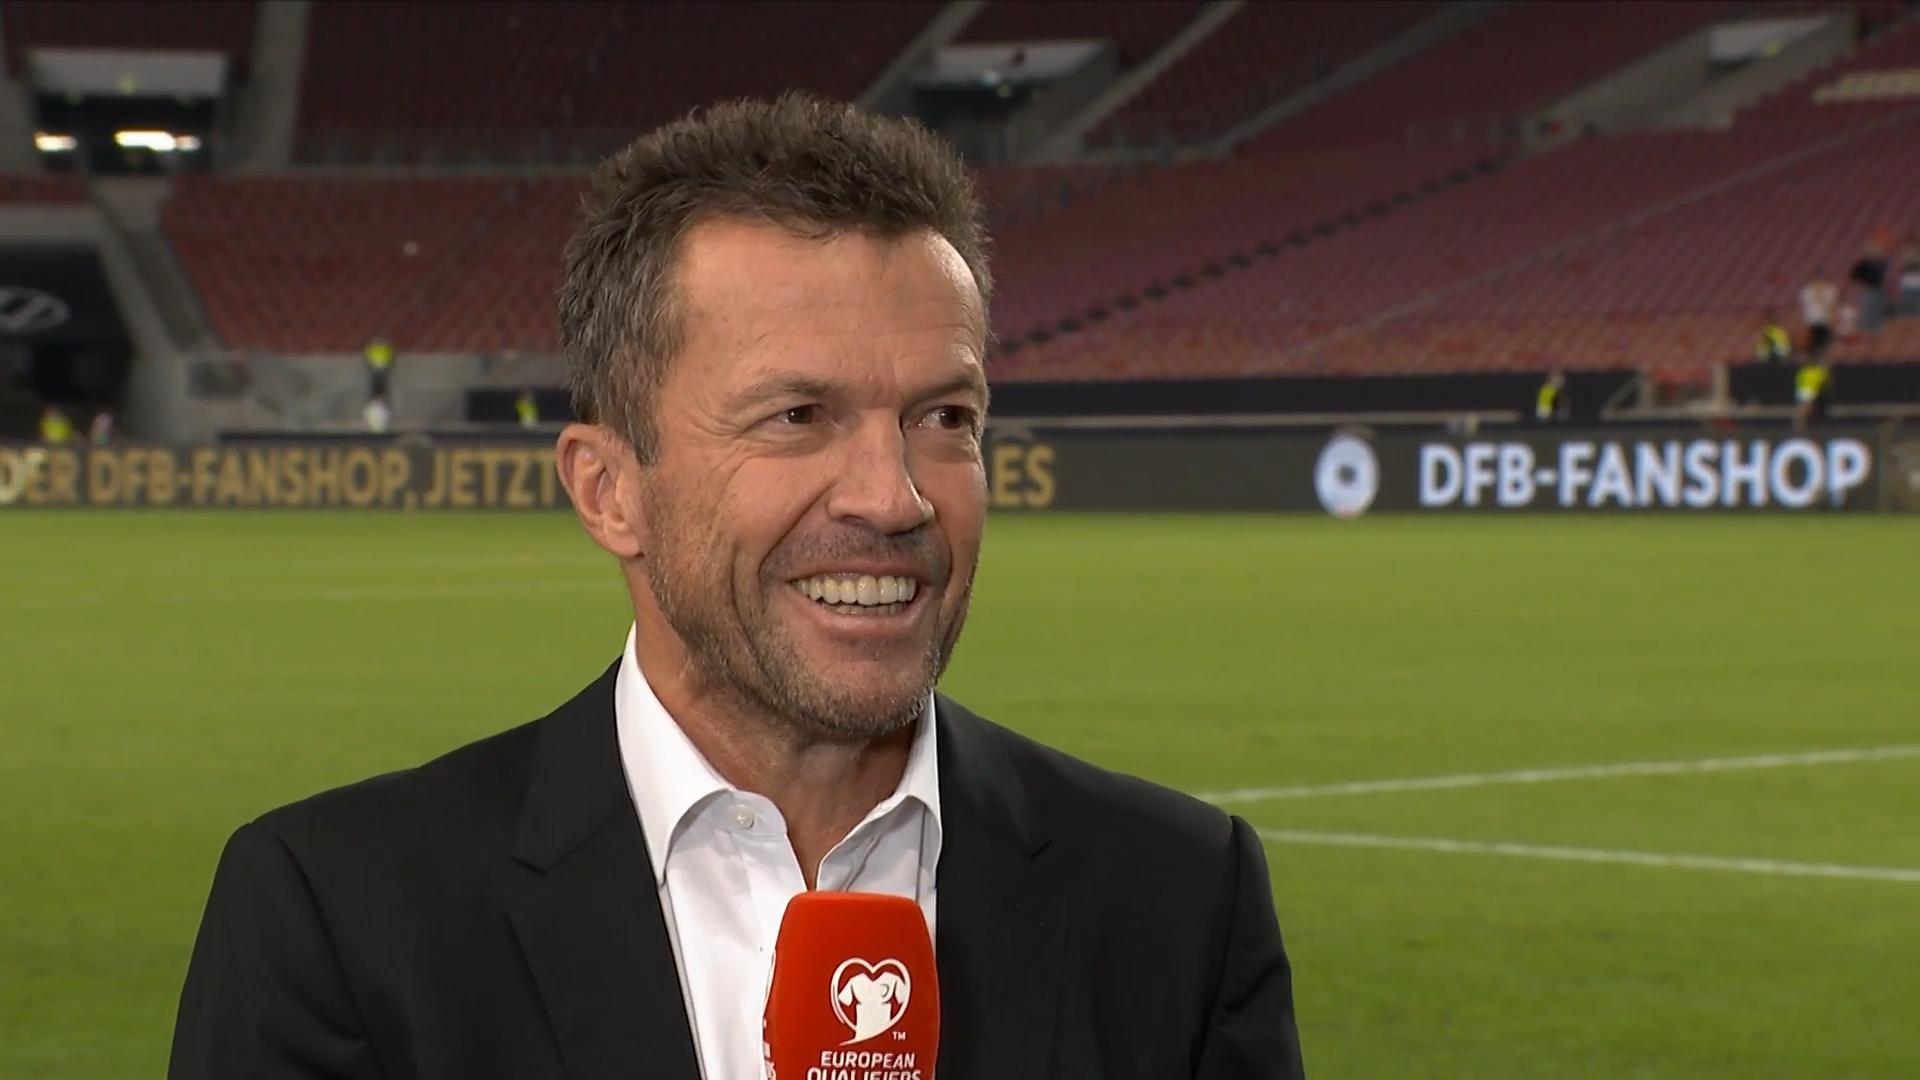 "Jetzt weiß die Mannschaft, was sie kann - aber ..." RTL-Experte Lothar Matthäus fürs Erste begeistert